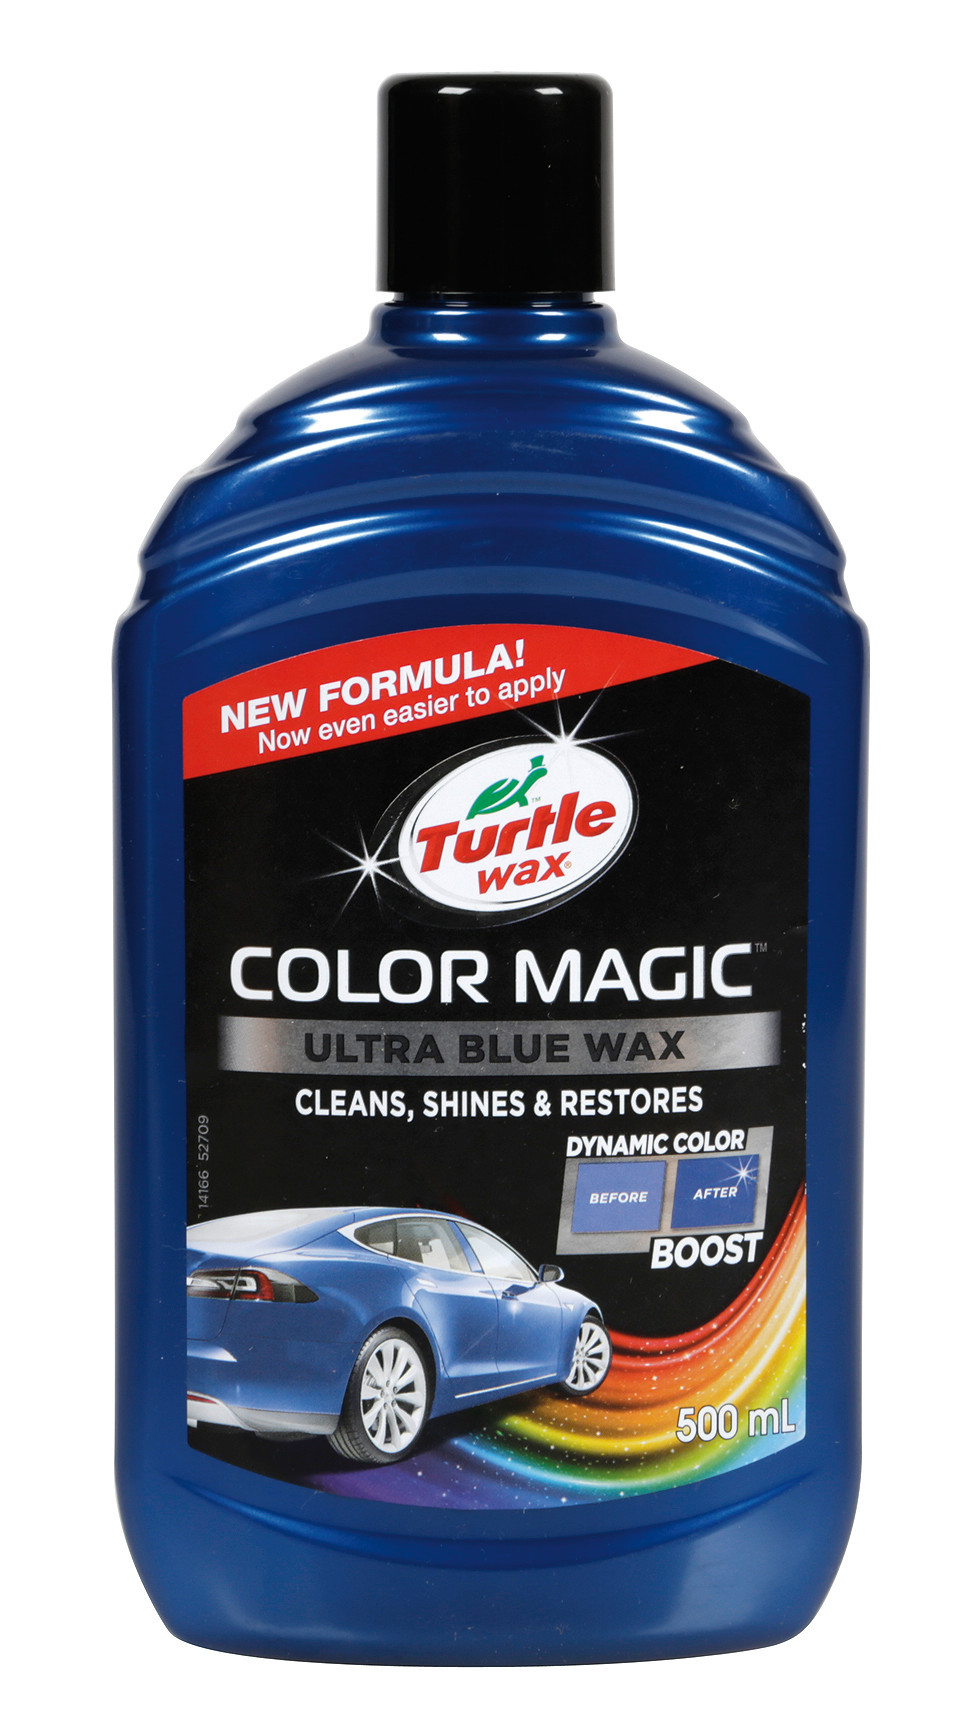 Turtle wax Color Magic autópolírozó paszta 500 ml - Kék thumb